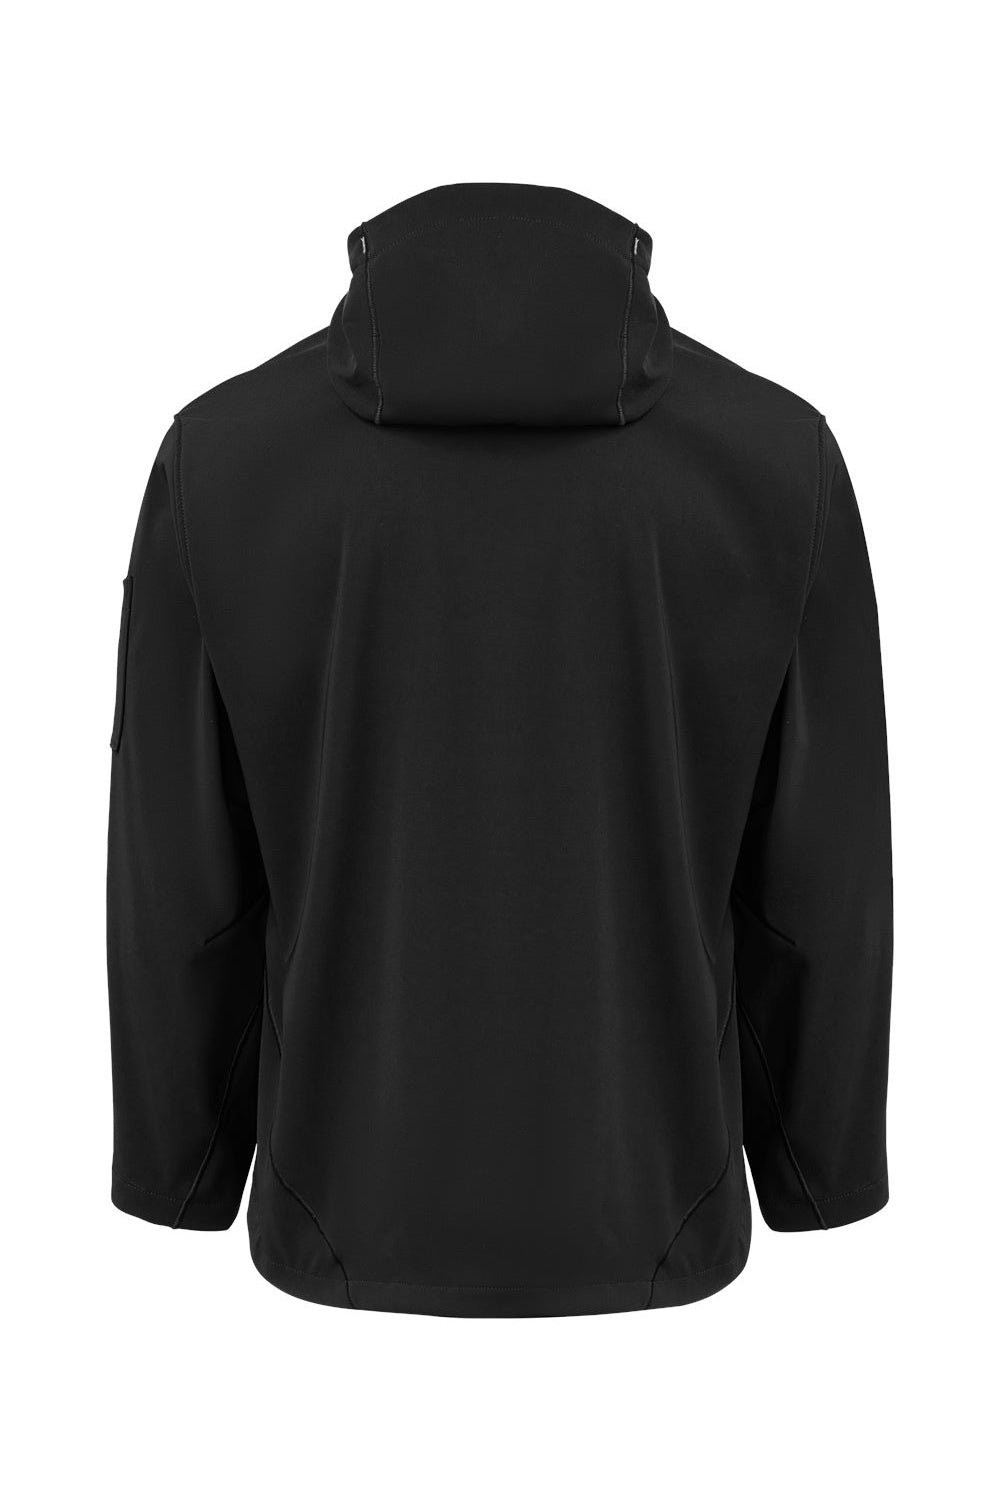 Dickies PH10 Mens Protect Wind & Water Resistant Full Zip Hooded Jacket Black Flat Back